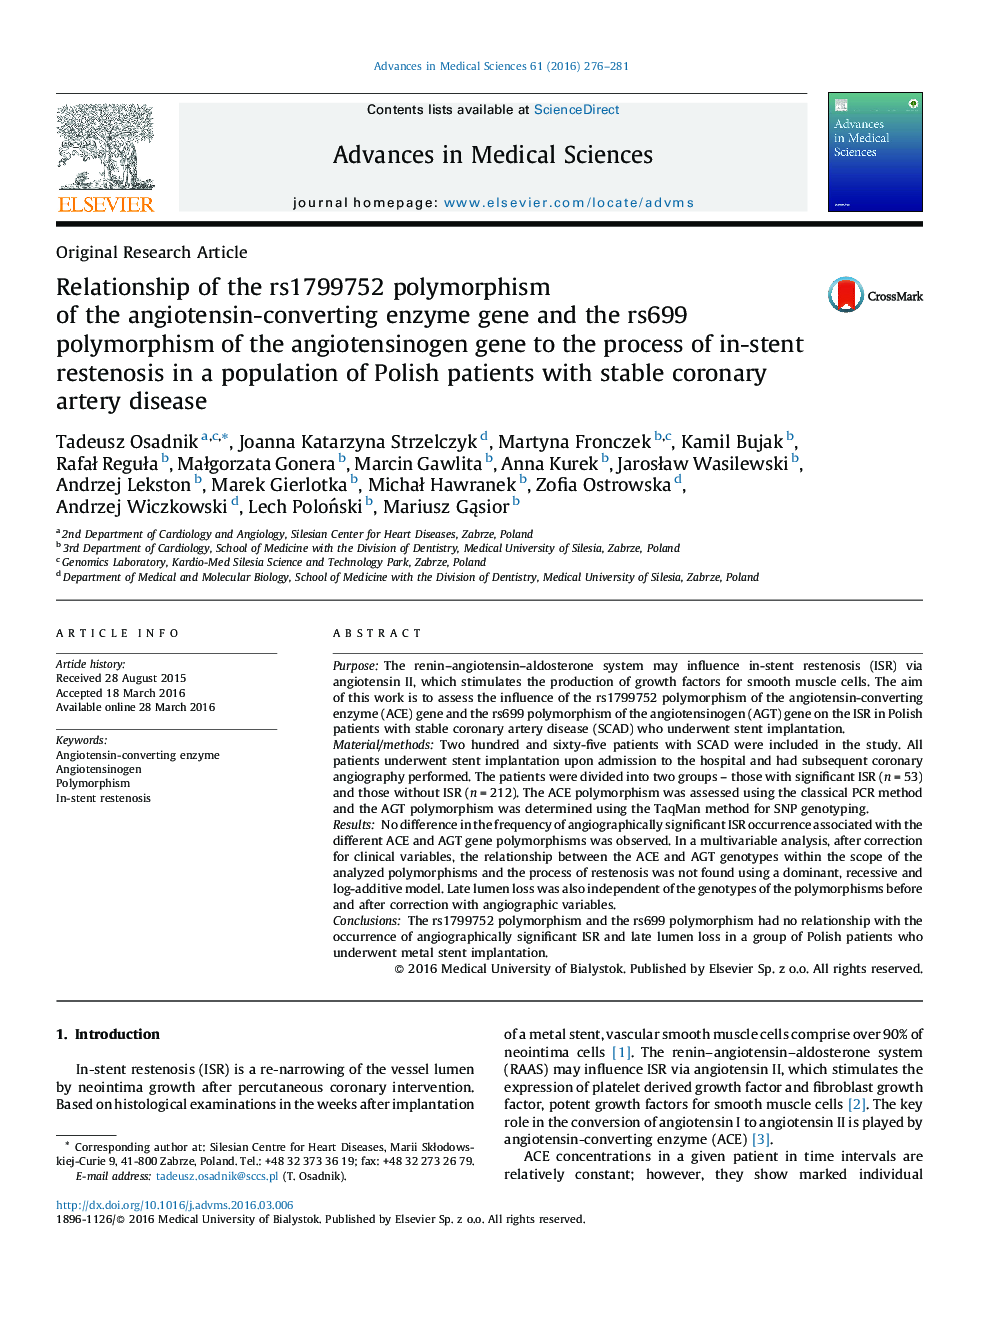 ارتباط پلی مورفیسم rs1799752 از ژن آنزیم مبدل آنژیوتانسین و پلی مورفیسم rs699 ژن آنژیوتانسینوژن با فرآیند تنگی مجدد در استنت در جمعیت بیماران لهستانی مبتلا به بیماری عروق کرونر پایدار